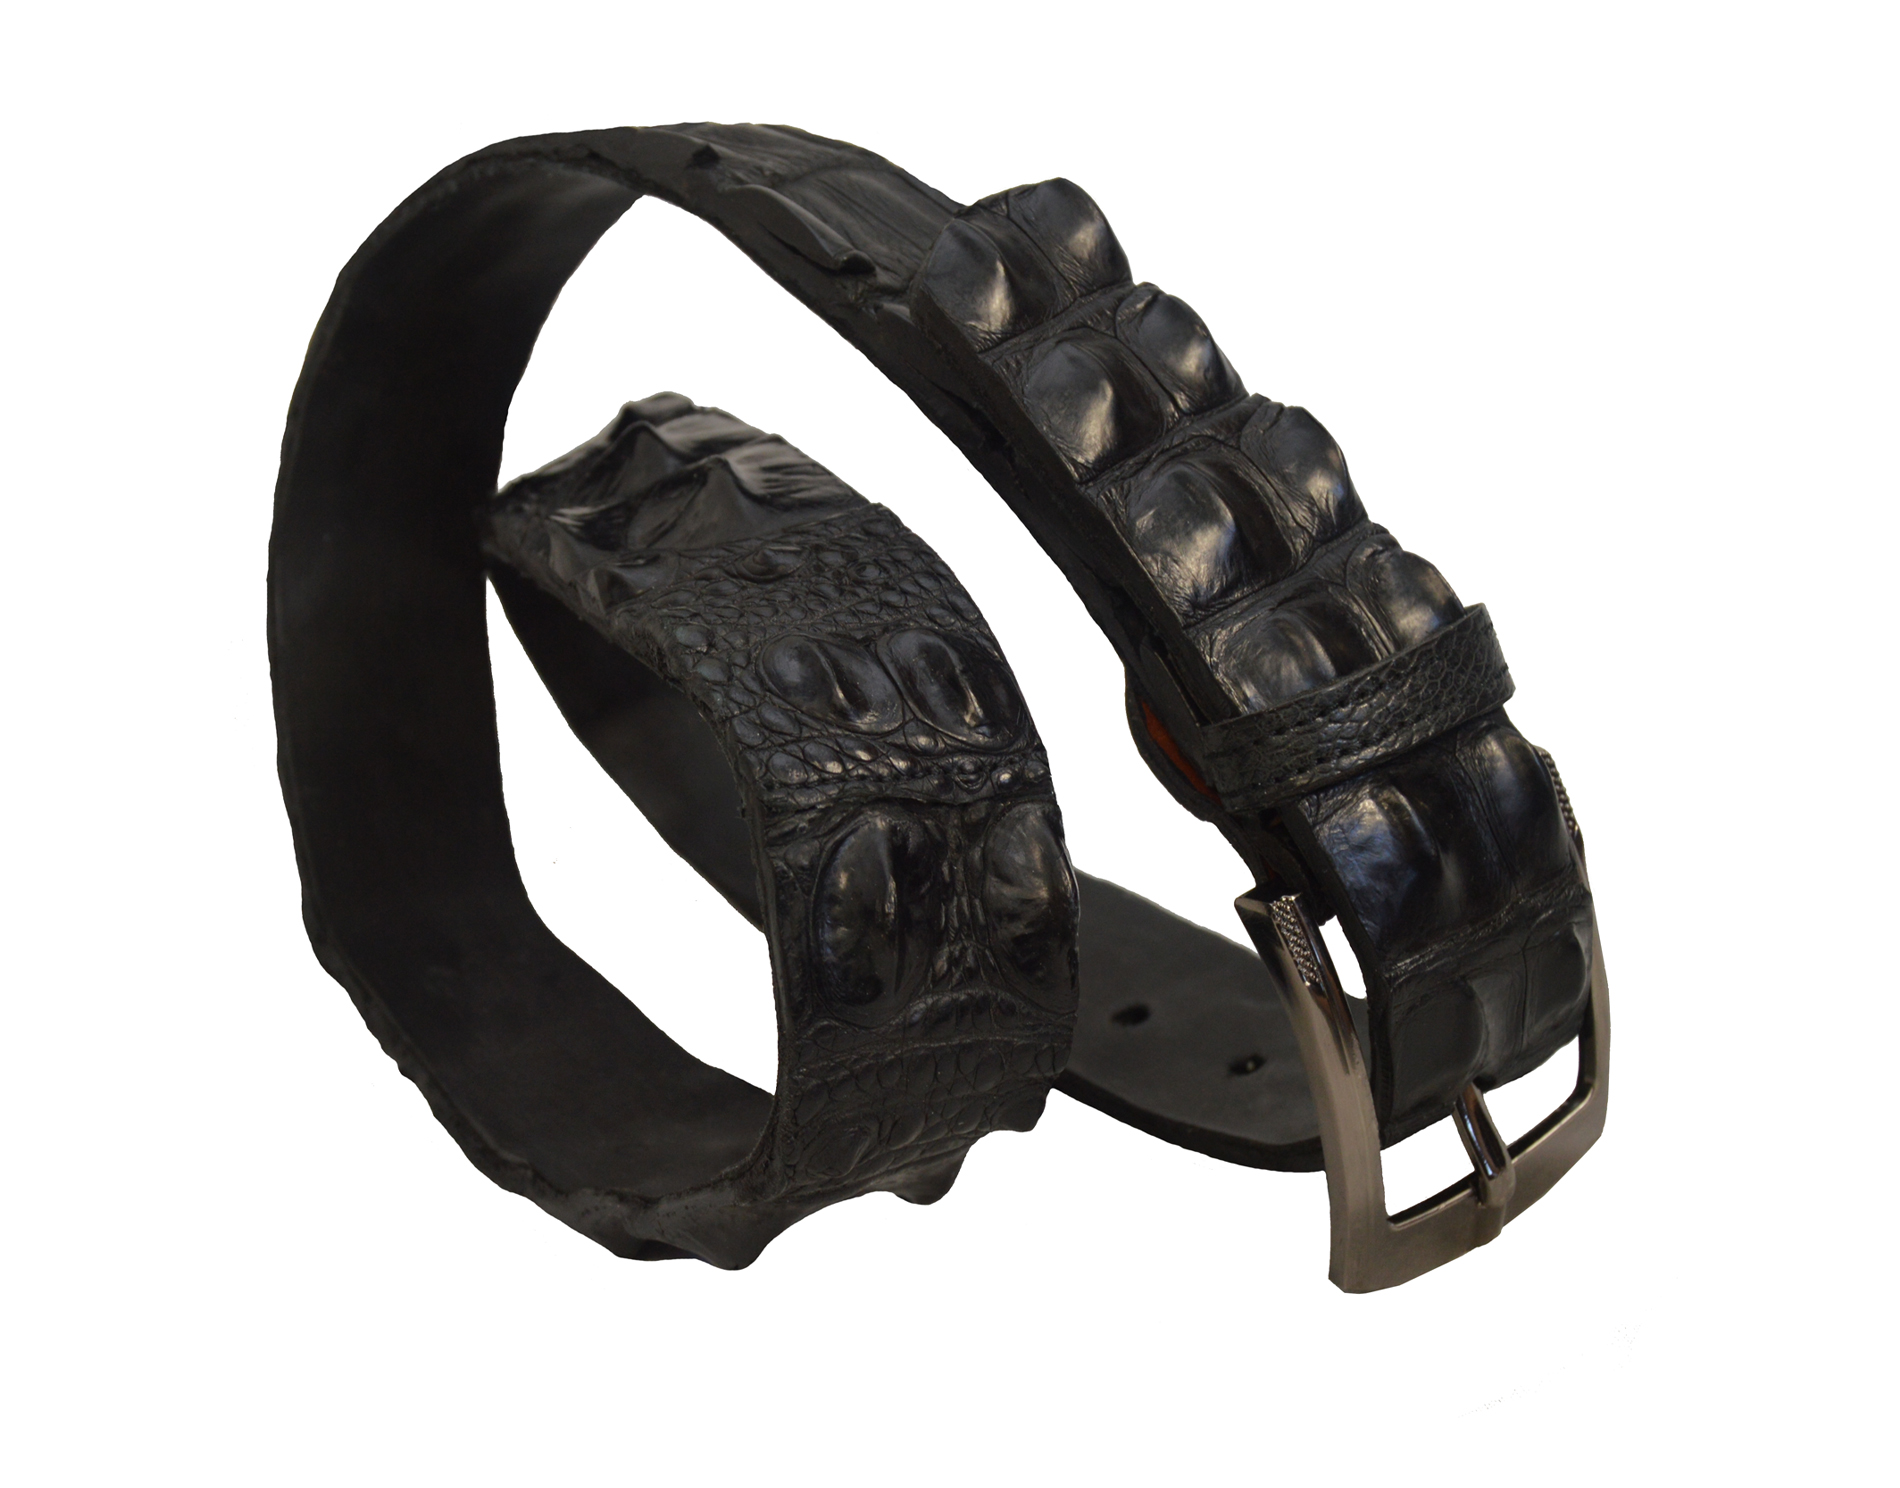 Elegance Redefined: Black Crocodile Wrapped Belt